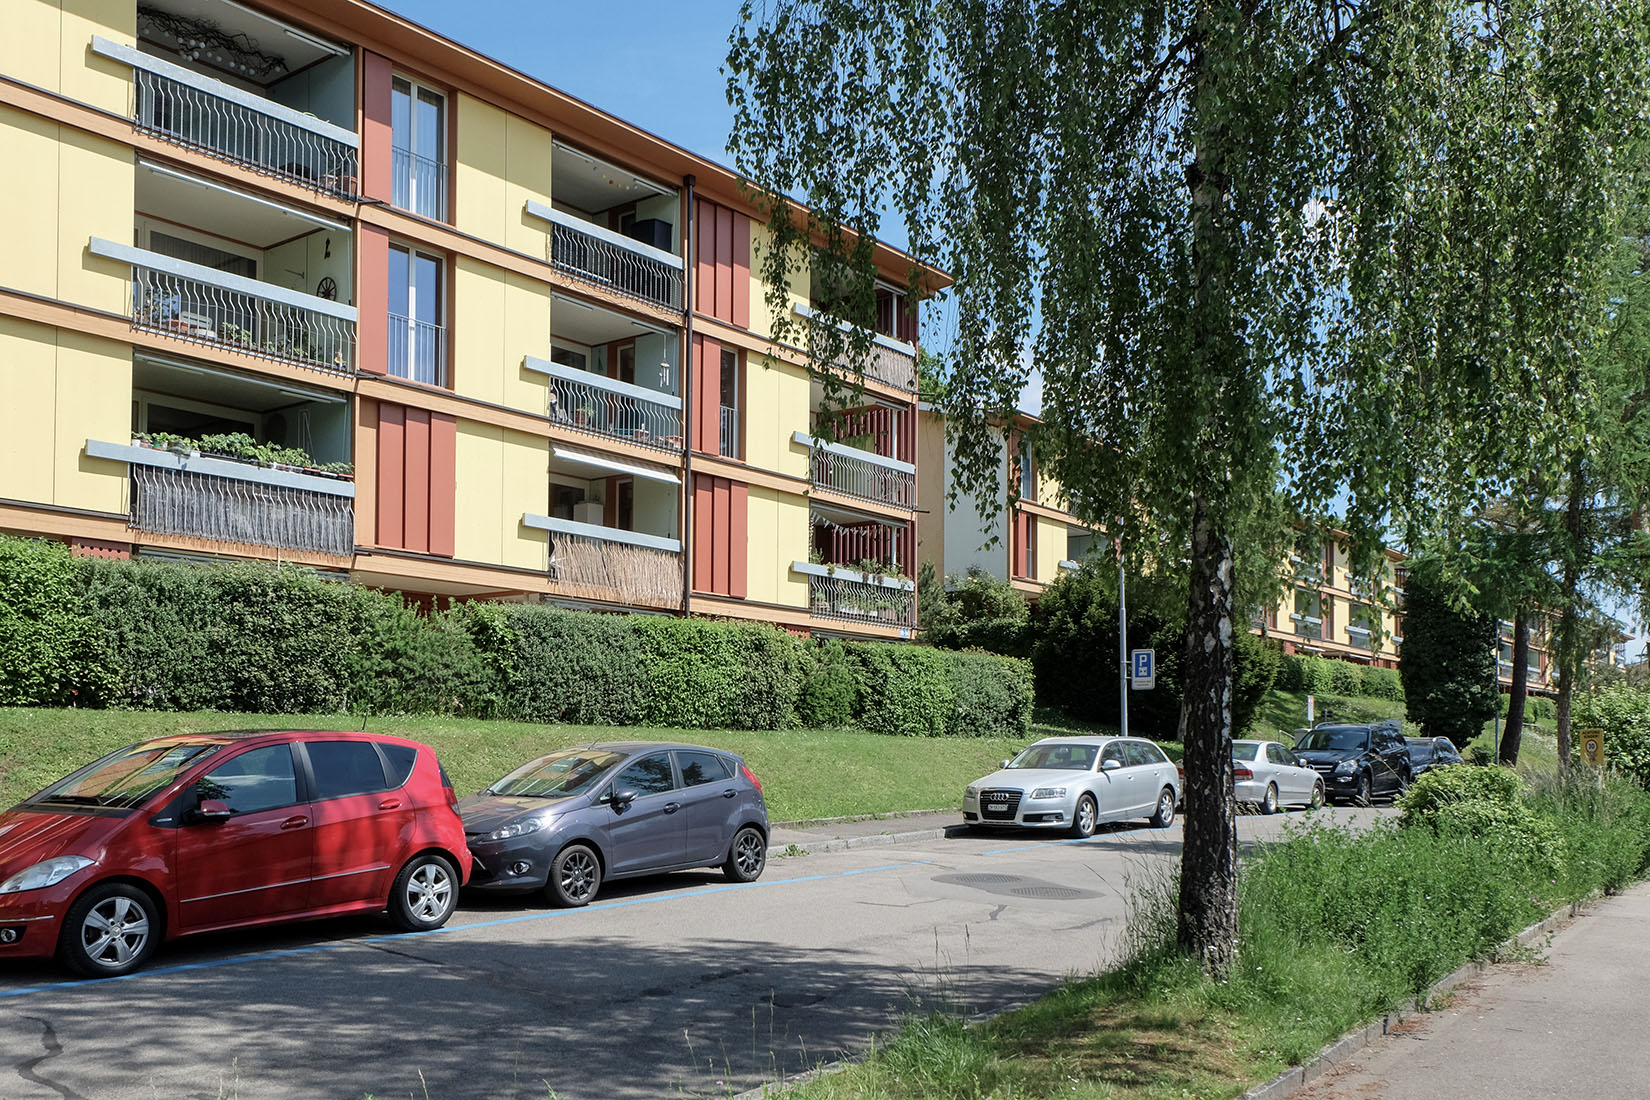 Knapkiewicz & Fickert - Residential Buildings
                Winzerhalde